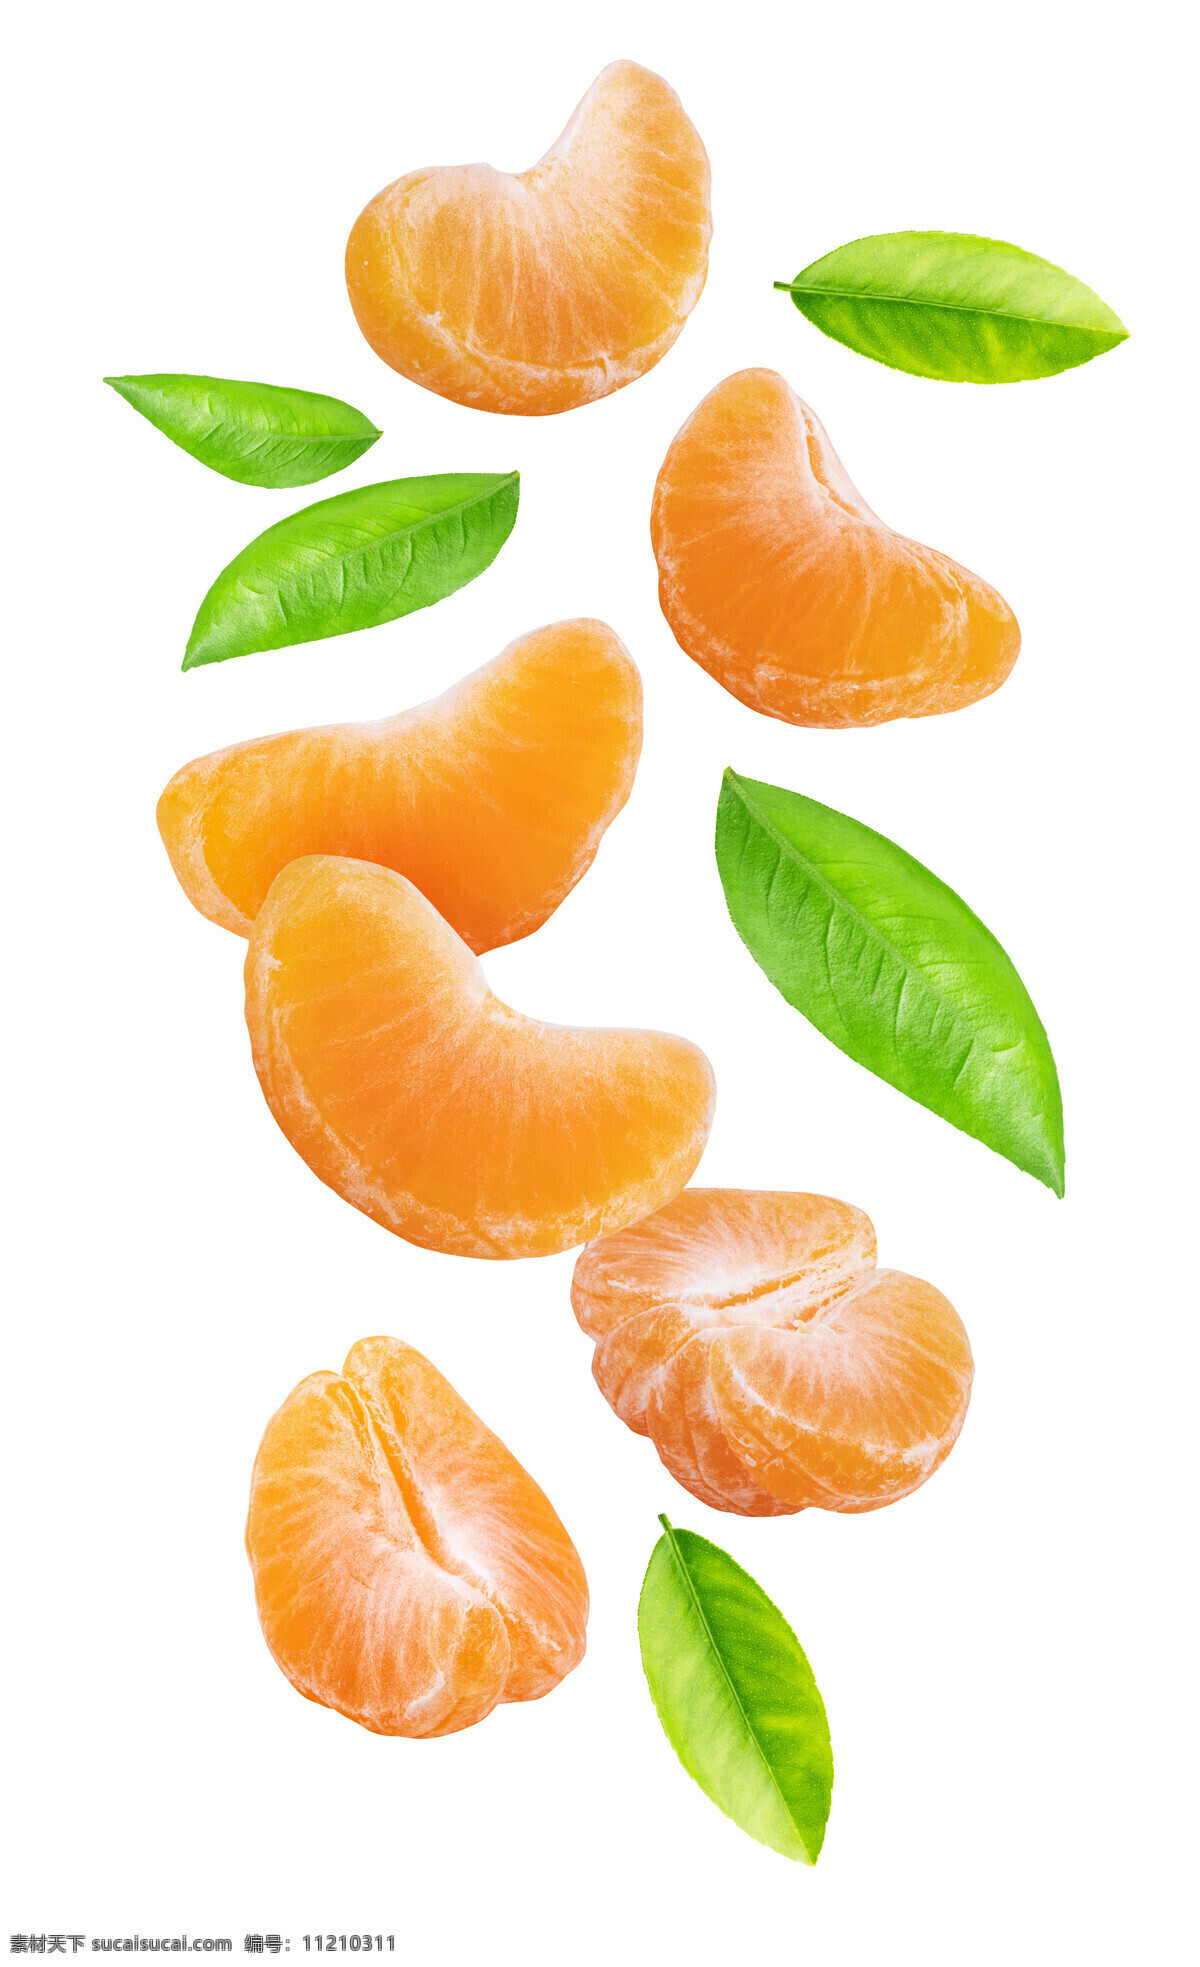 剥皮橘子 掰开的橘子 水果 新鲜橘子 新鲜水果 芦柑 蜜糖橘 蔬菜水果 果汁 高清橘子 餐饮美食 食物原料